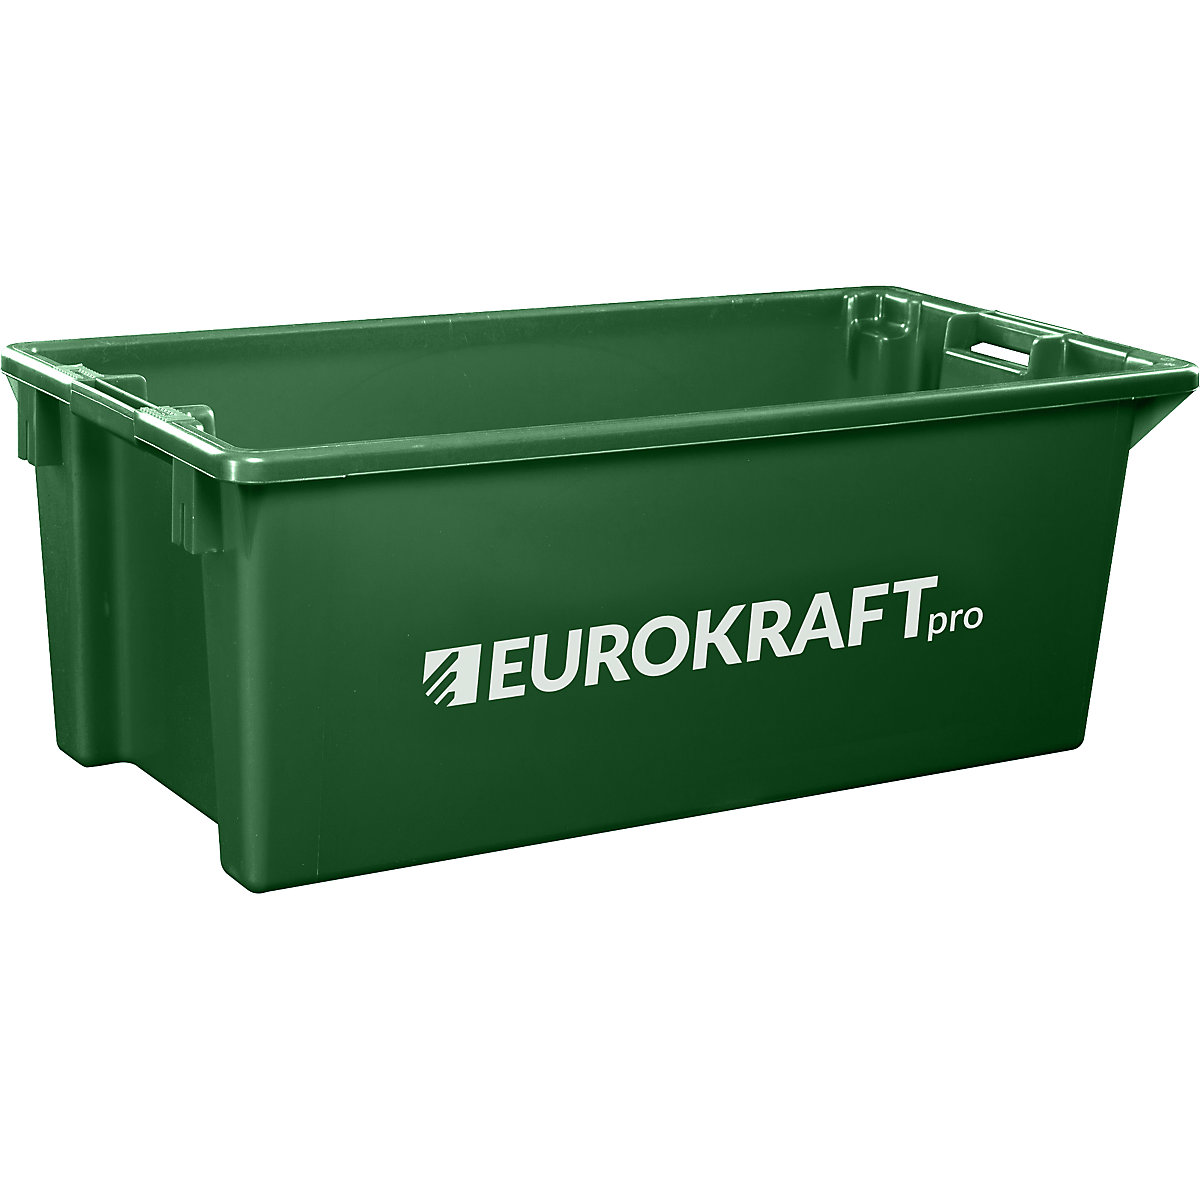 Otočná stohovací nádoba z polypropylenu vhodného pro potraviny – eurokraft pro, objem 13 l, bal.j. 4 ks, stěny a dno plné, zelená-7